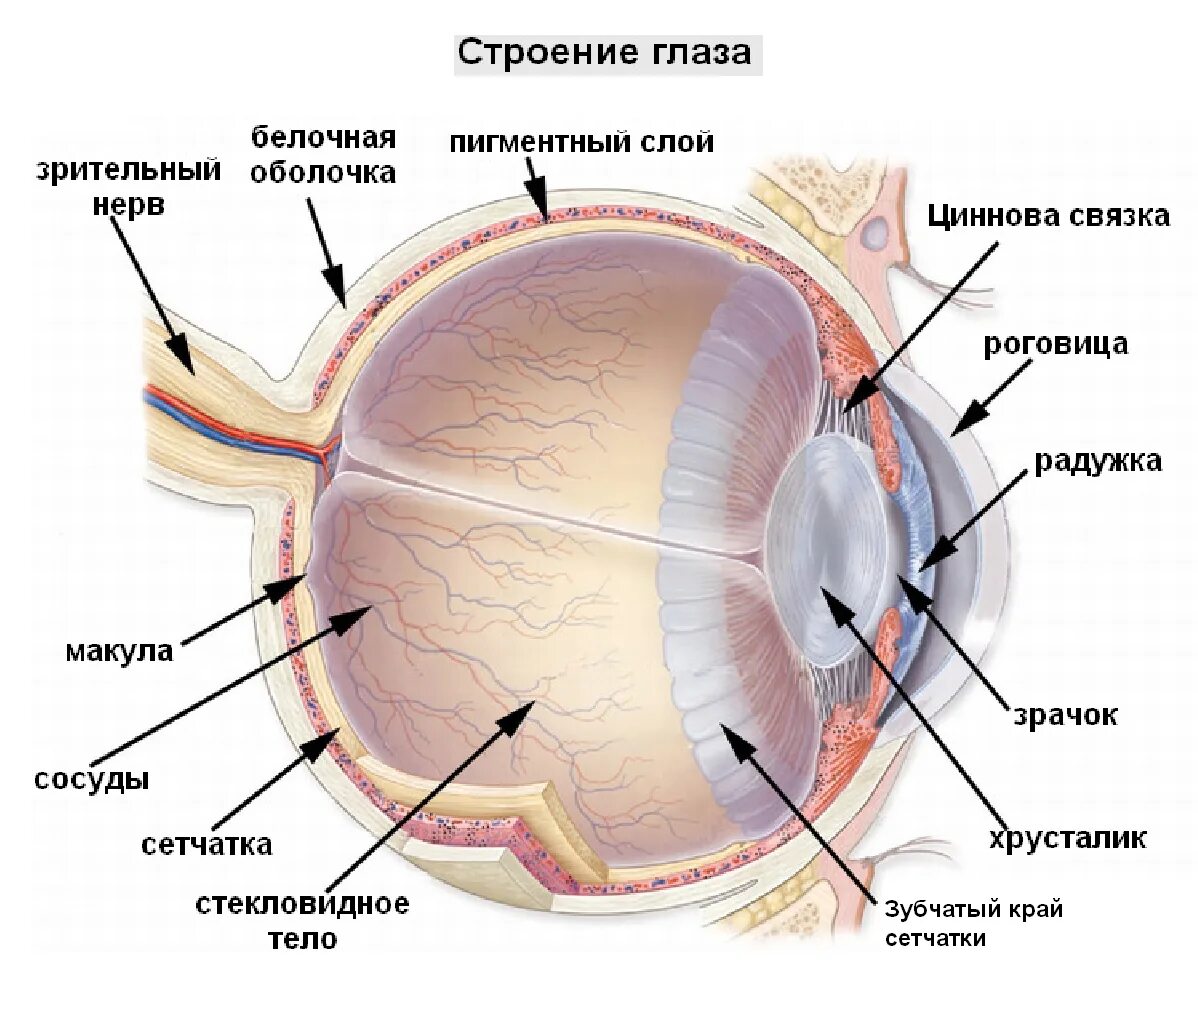 Глаз человека имеет оболочек. Сетчатка оболочка глаза. Строение глаза послойно. Строение глазного яблока и сетчатки. Структура глазного яблока схема.